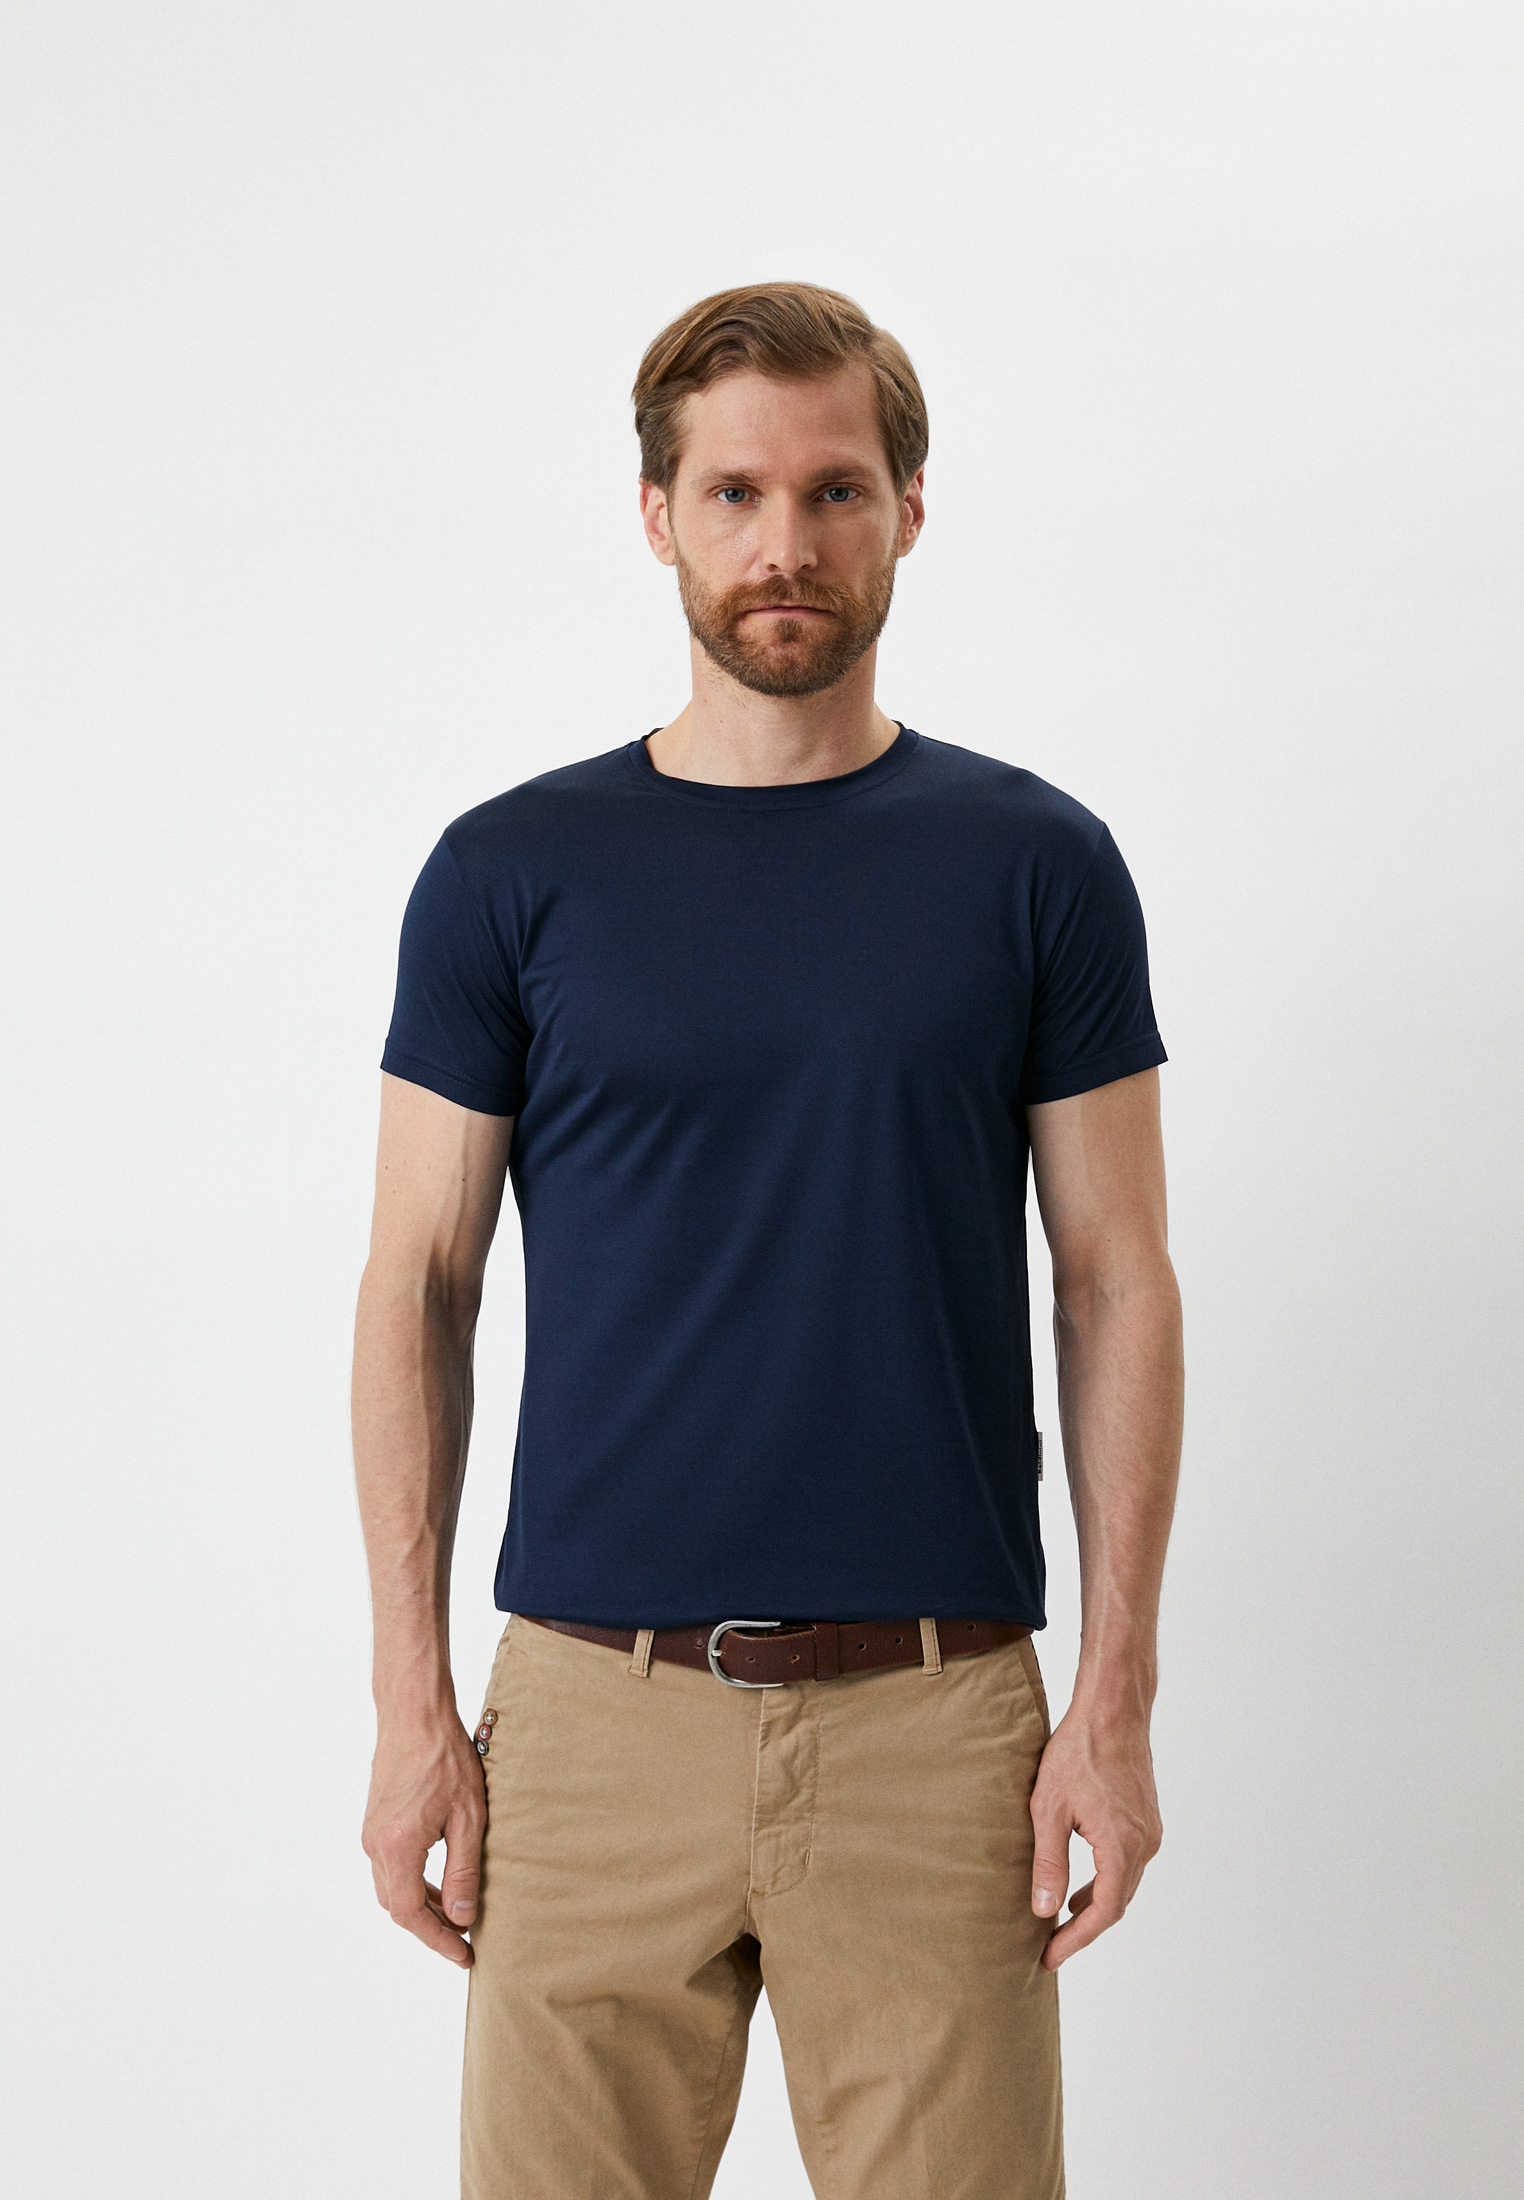 Мужская футболка Baldinini (Балдинини) M603: изображение 5